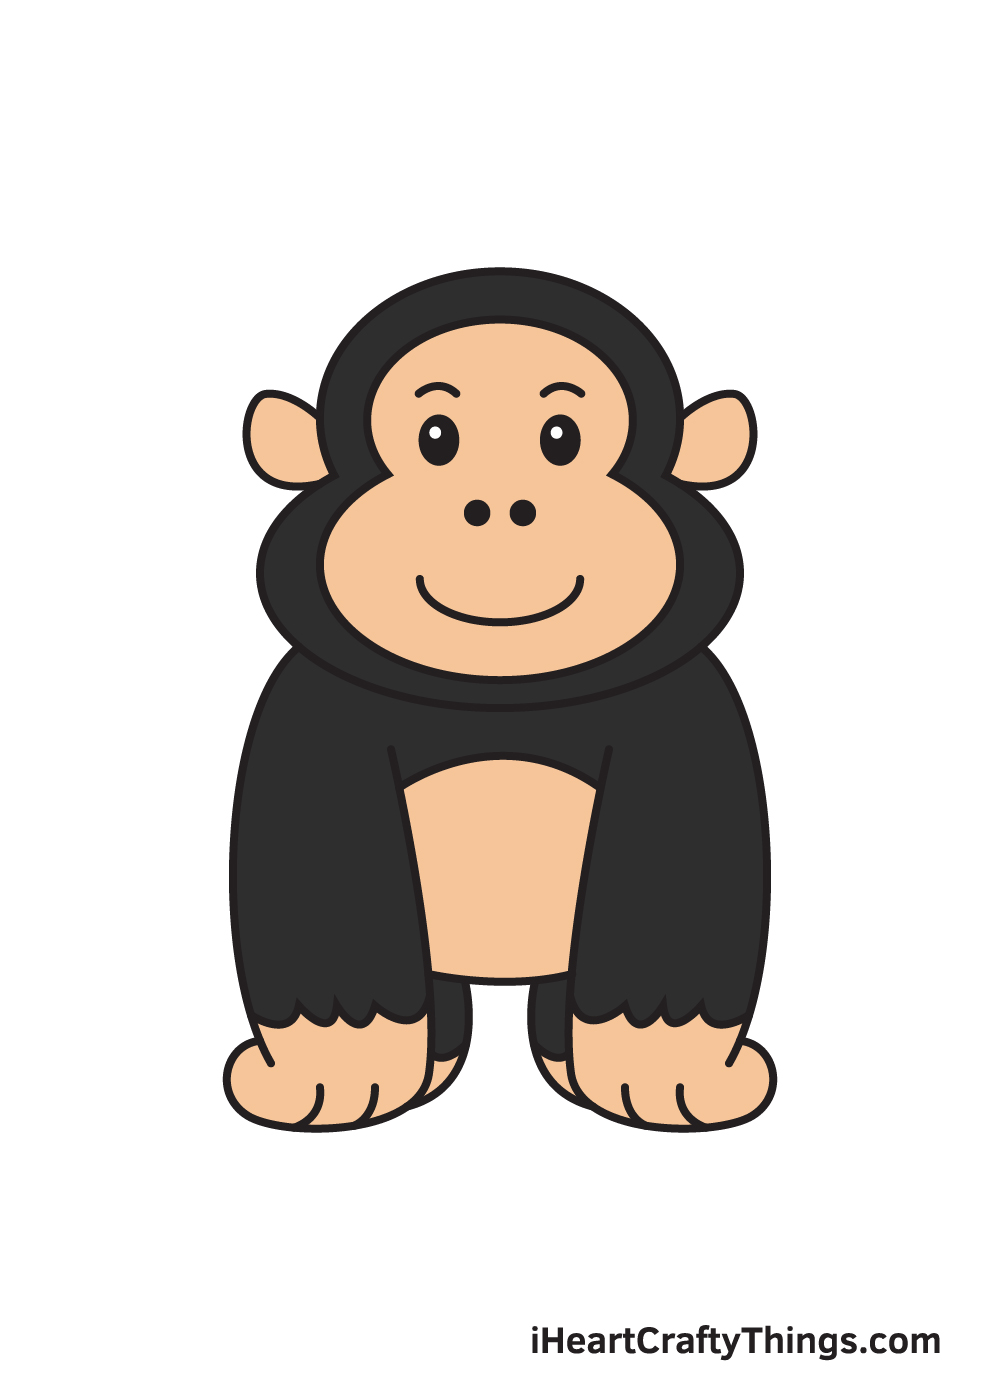 Hình vẽ đẹp con khỉ: Hãy cùng chiêm ngưỡng một bức tranh đẹp về con khỉ, với những đường nét tinh tế, màu sắc đa dạng và sự tinh tế trong từng chi tiết. Bức tranh này sẽ mang lại cho bạn cảm giác yên bình và hạnh phúc, và sự lưu lại một khoảnh khắc đẹp trong trí nhớ của bạn.